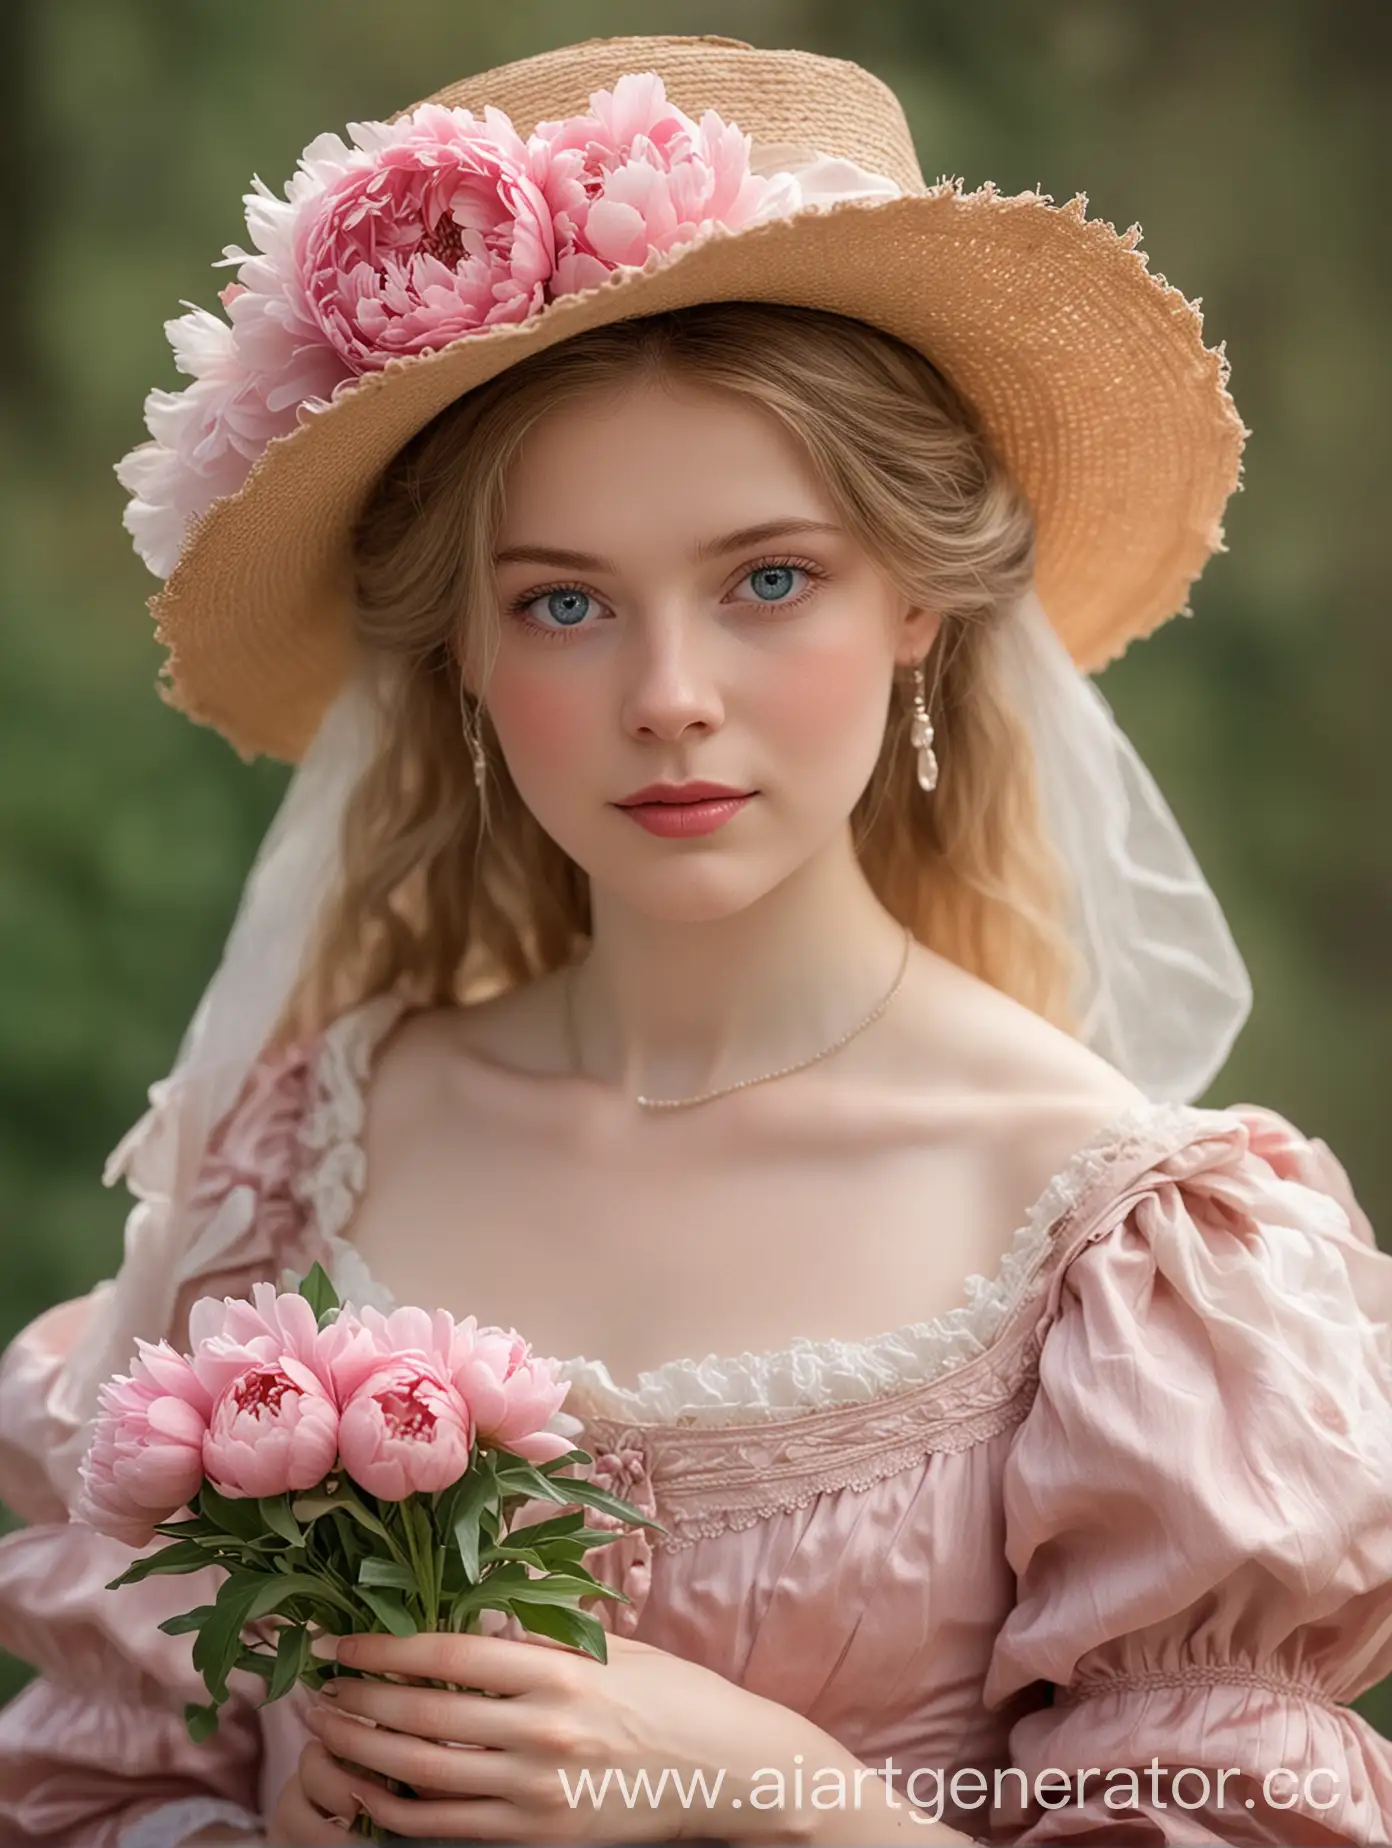 19 век, Бледная кожа, голубые глаза, светло-русые волосы, розовое платье 19 века и шляпа 19 века, пионы в руках